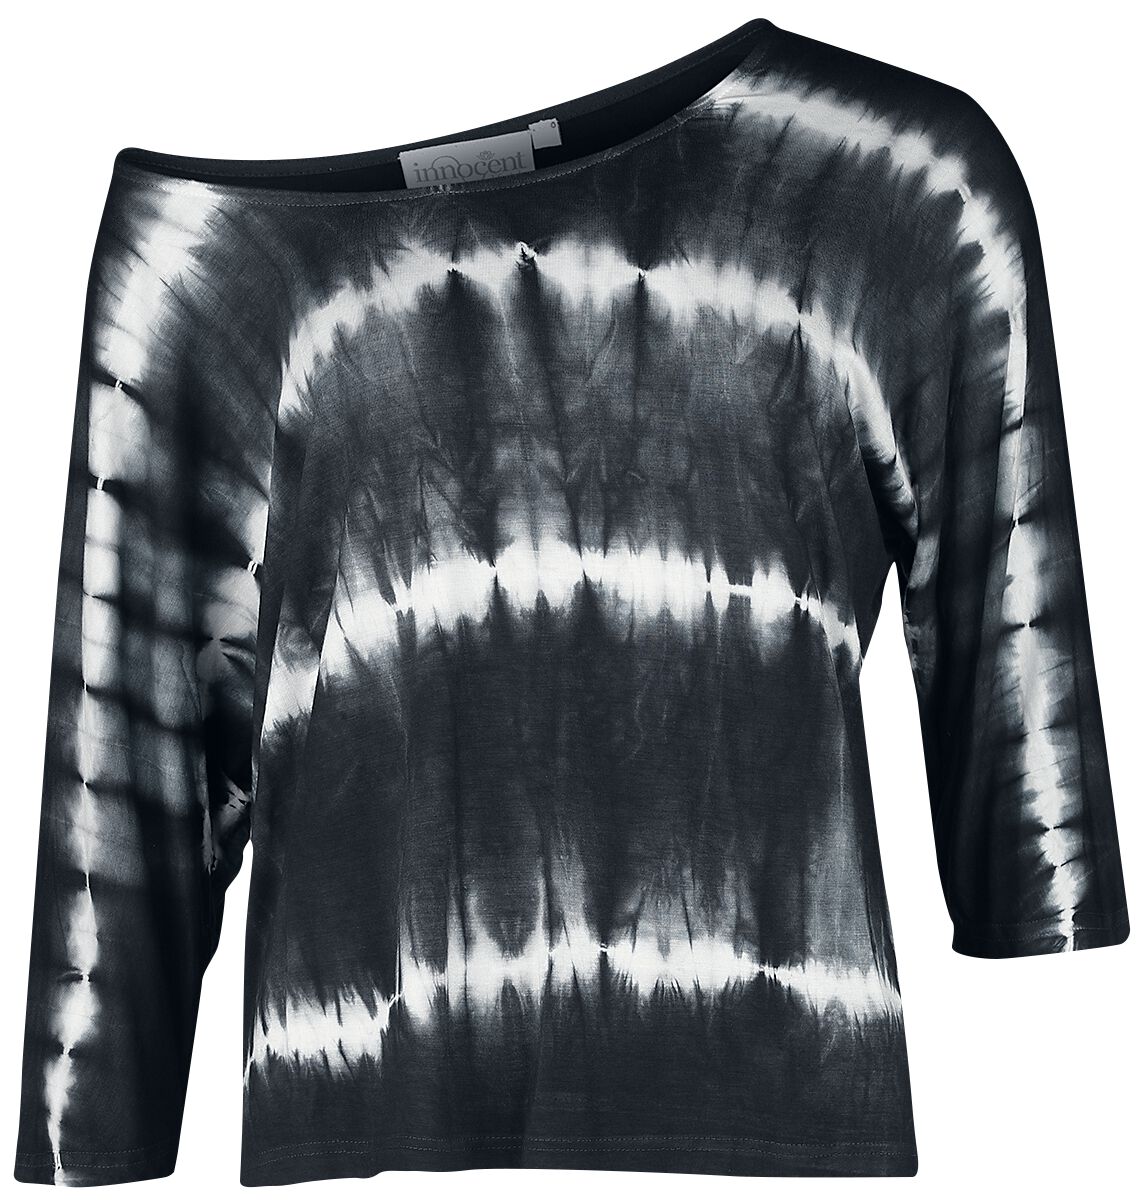 Innocent - Gothic Langarmshirt - Solana Top - XS bis 4XL - für Damen - Größe XL - schwarz/weiß